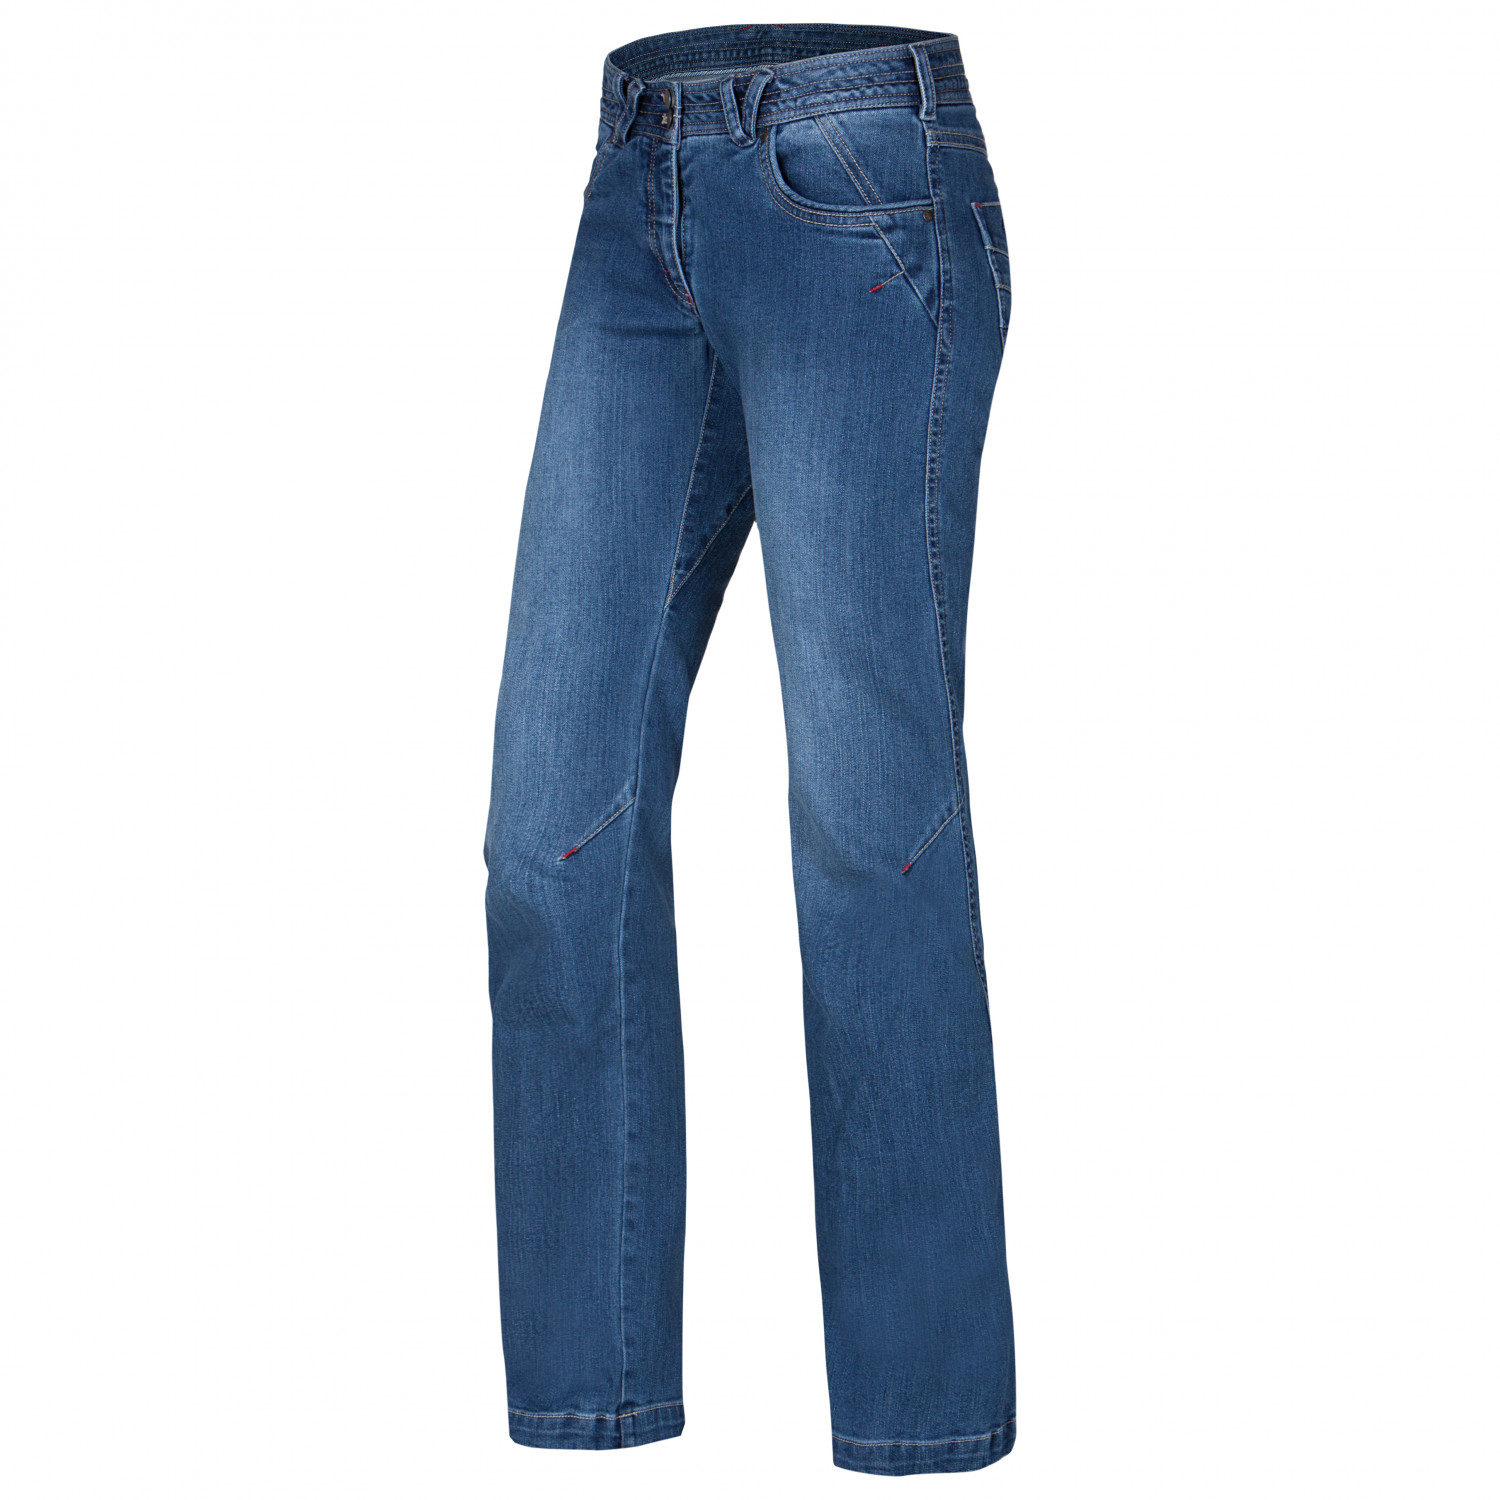 Альпинистские штаны Ocun Women's Medea Jeans, цвет Middle Blu